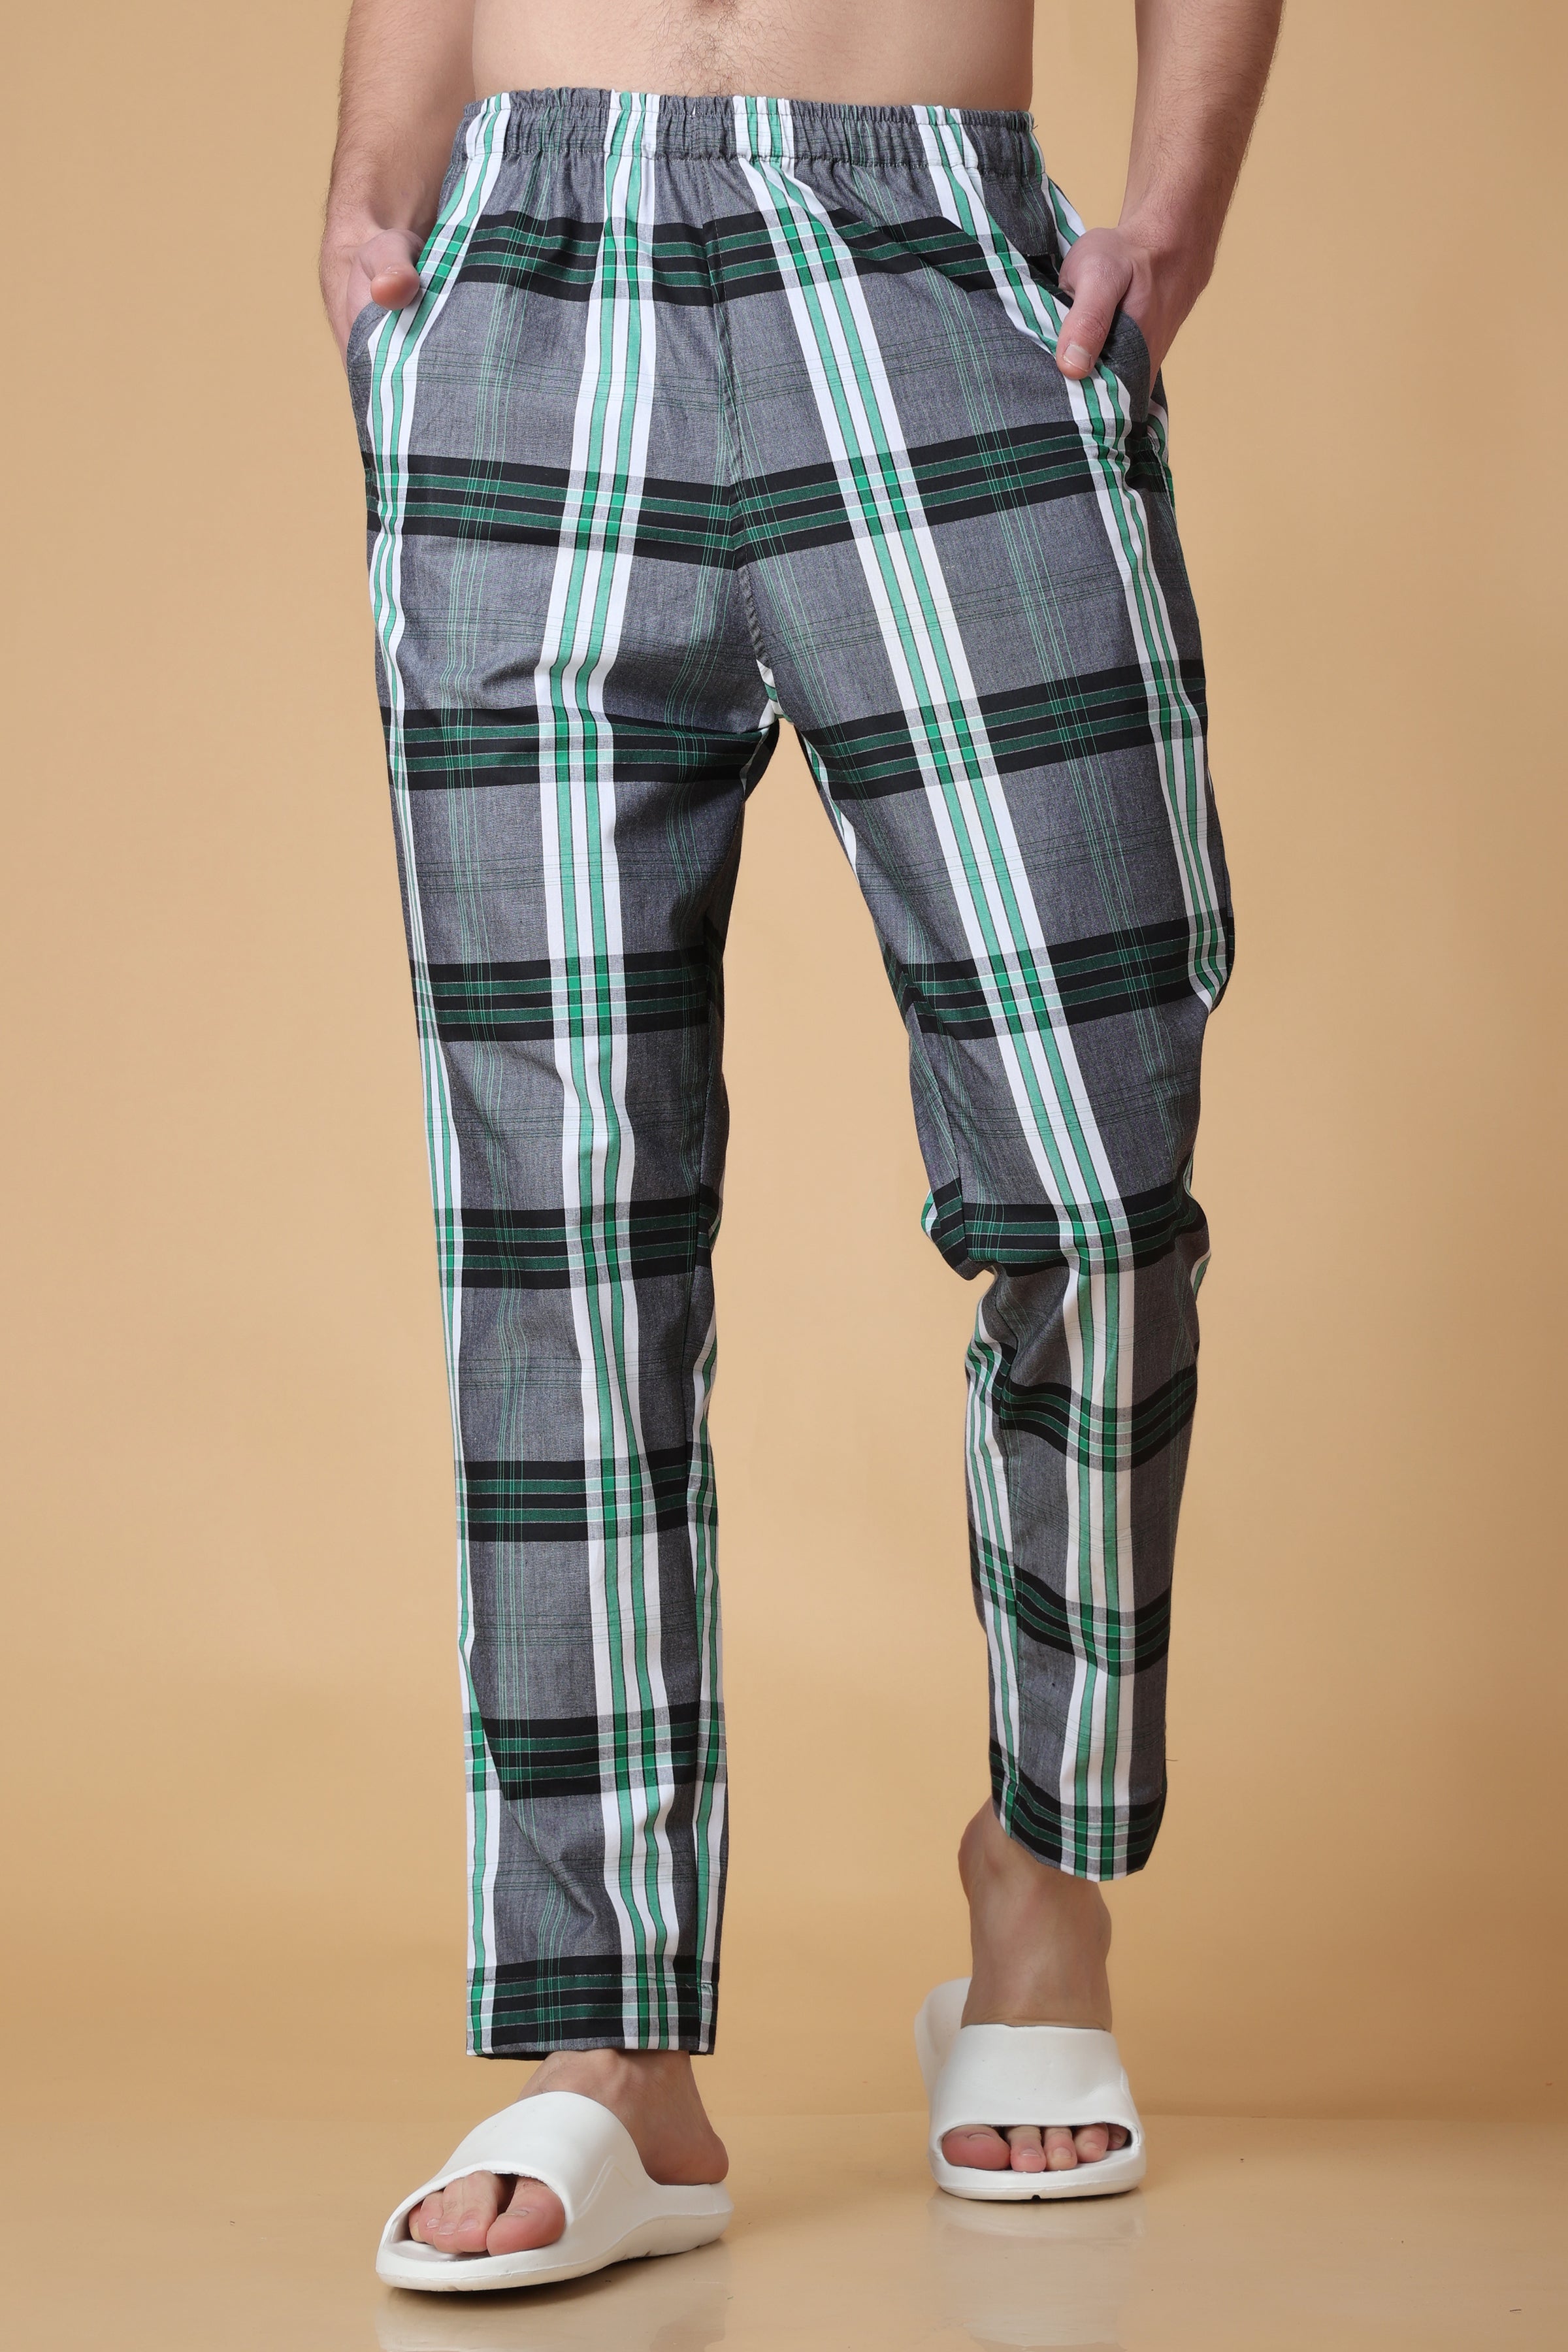 Pajama Pants Pyjamas Trousers  Buy Pajama Pants Pyjamas Trousers online in  India